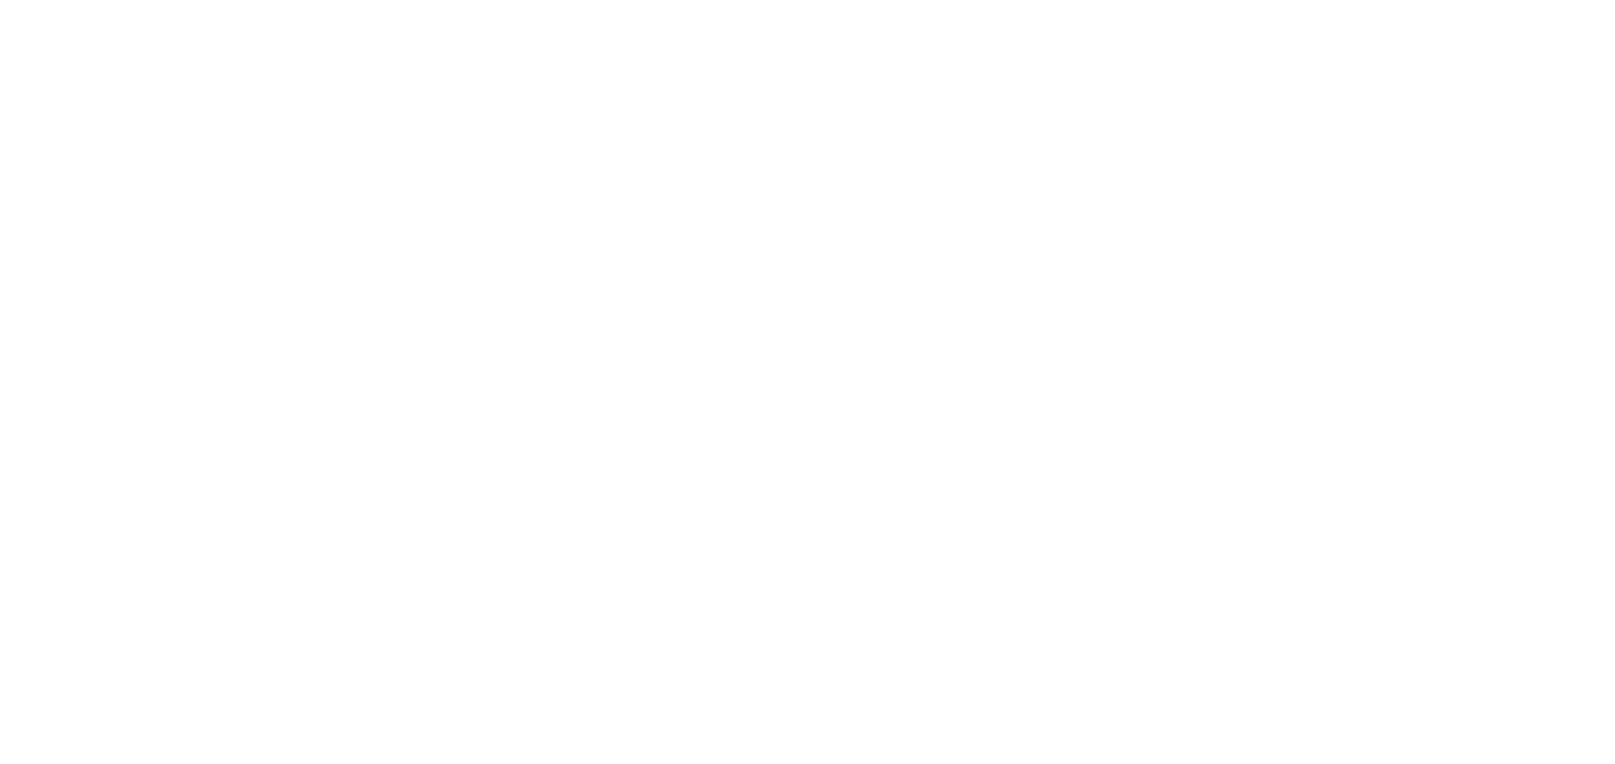 NetEase logo for dark backgrounds (transparent PNG)